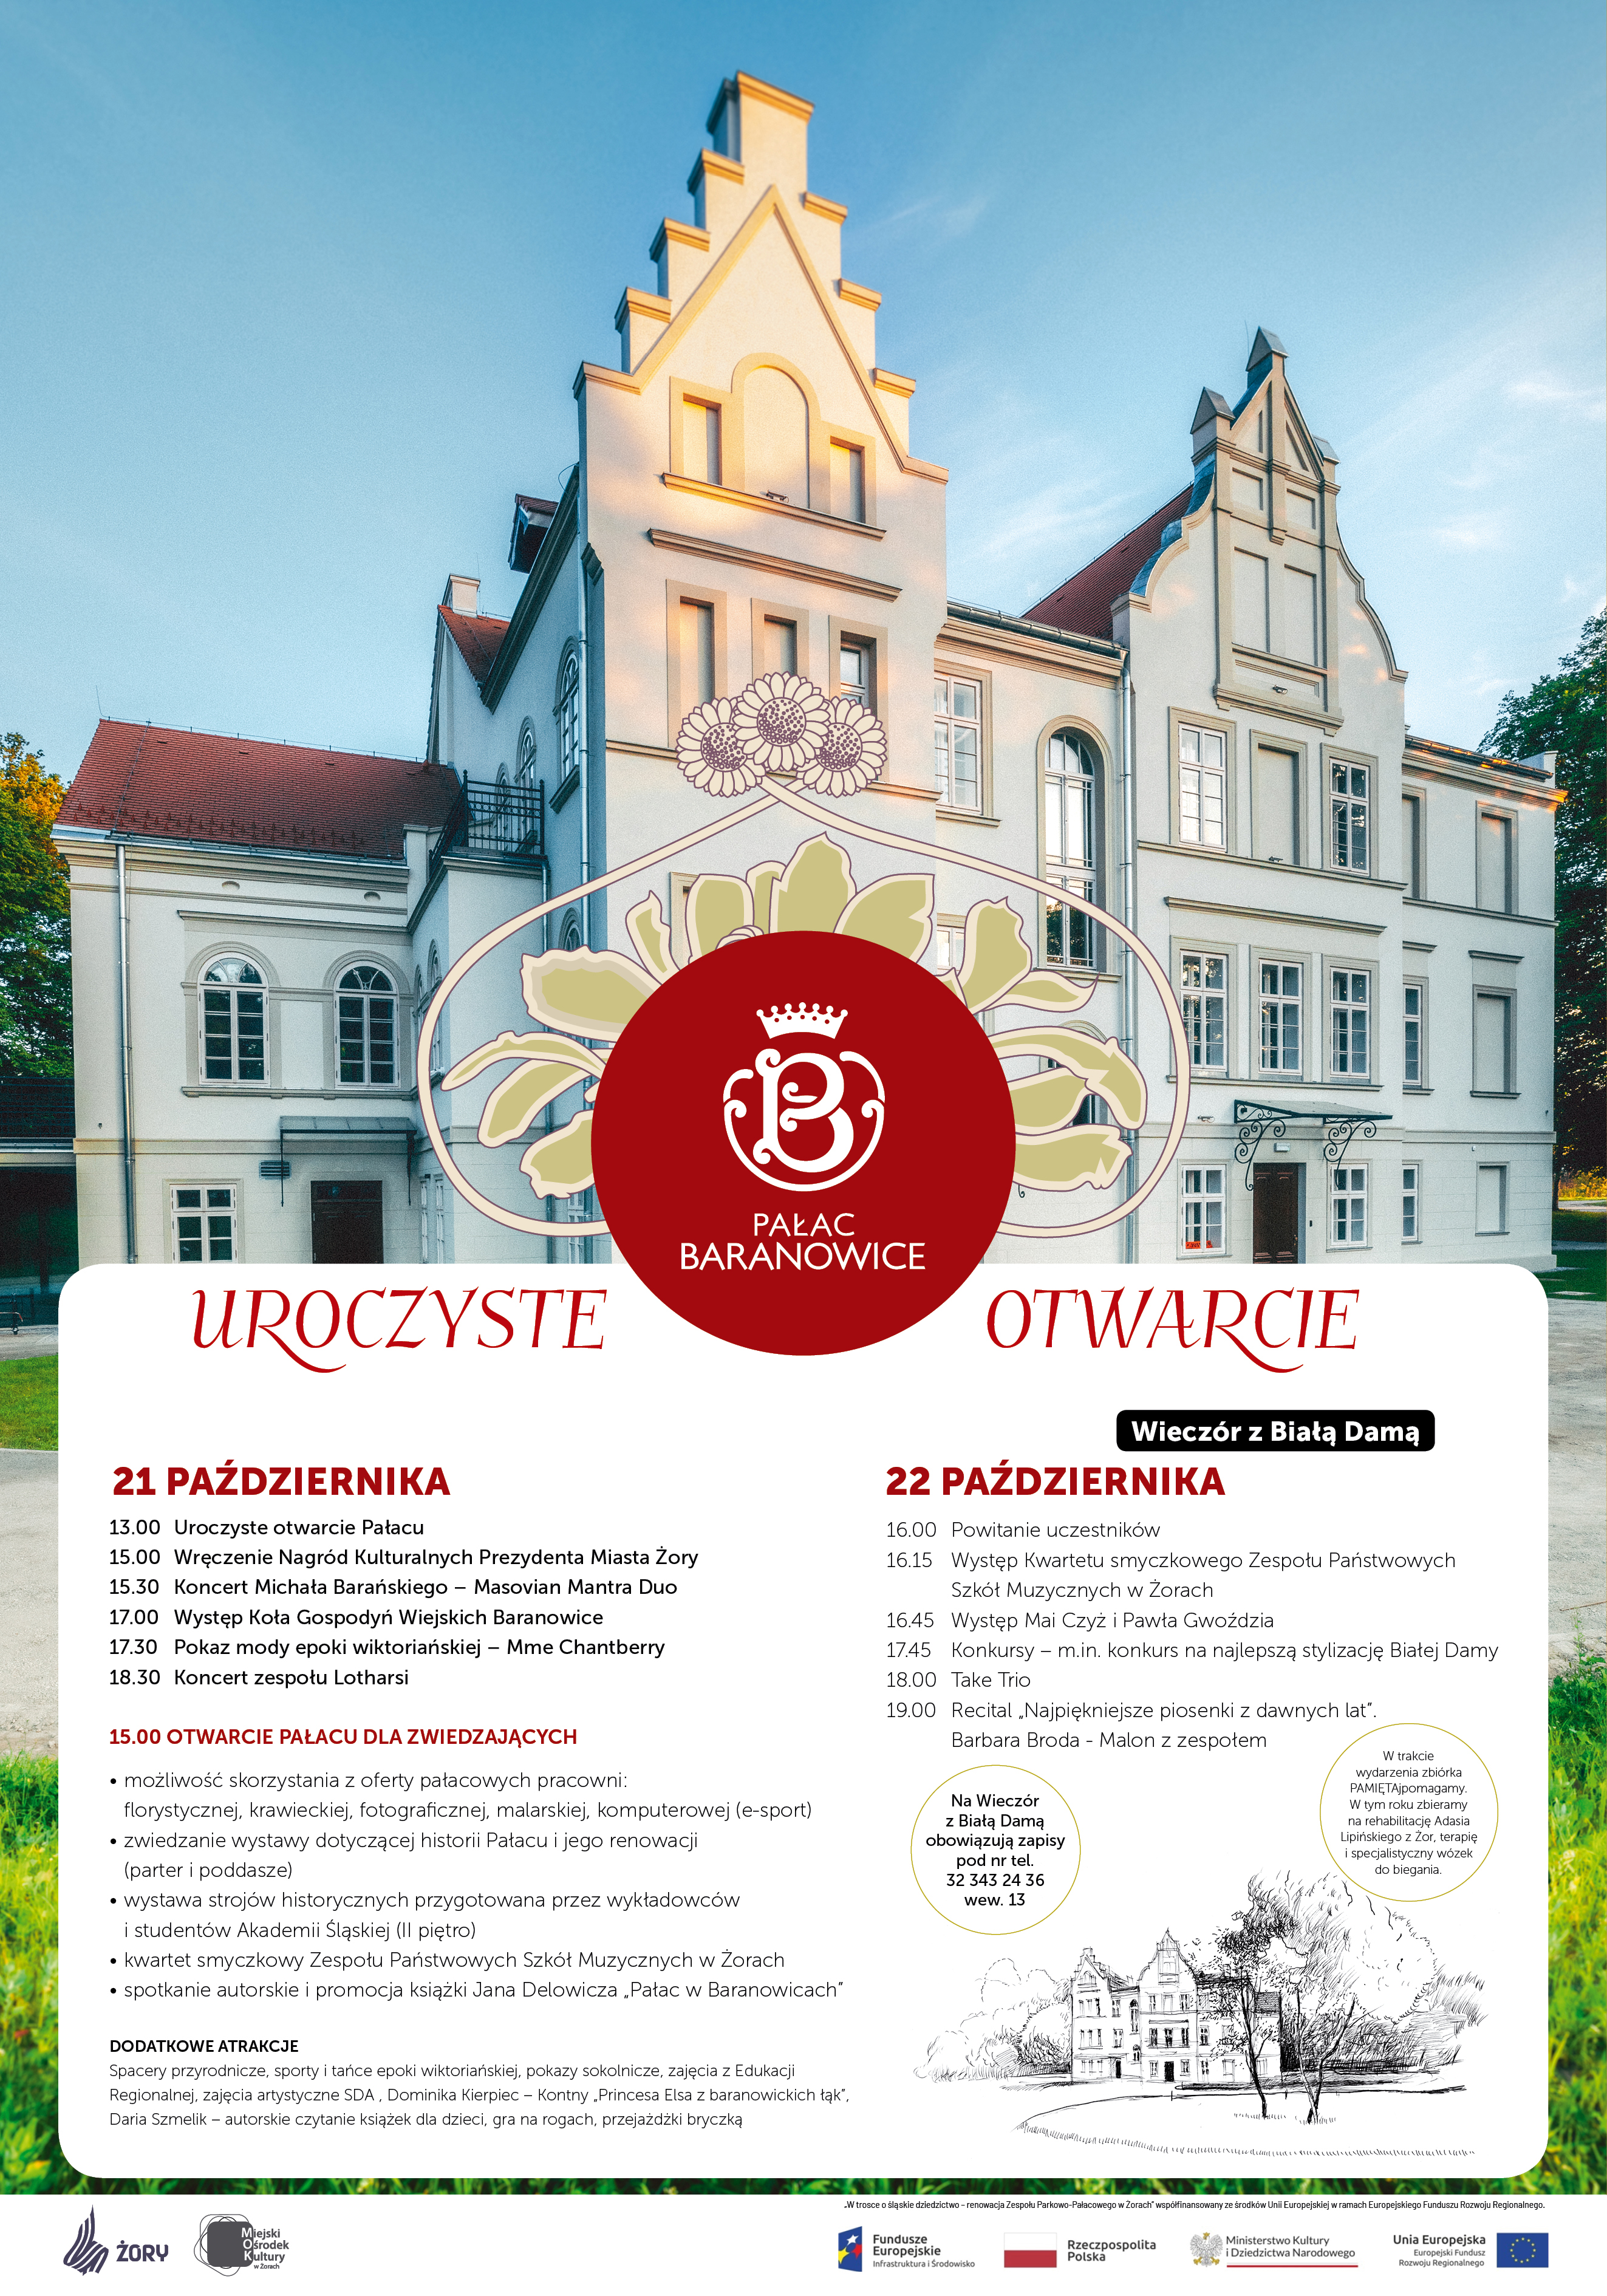 Plakat z wizerunkiem Pałacu w Baranowicach, logo Pałacu oraz programem otwarcia tej placówki w dniach 21 i 22 października 2023 r.